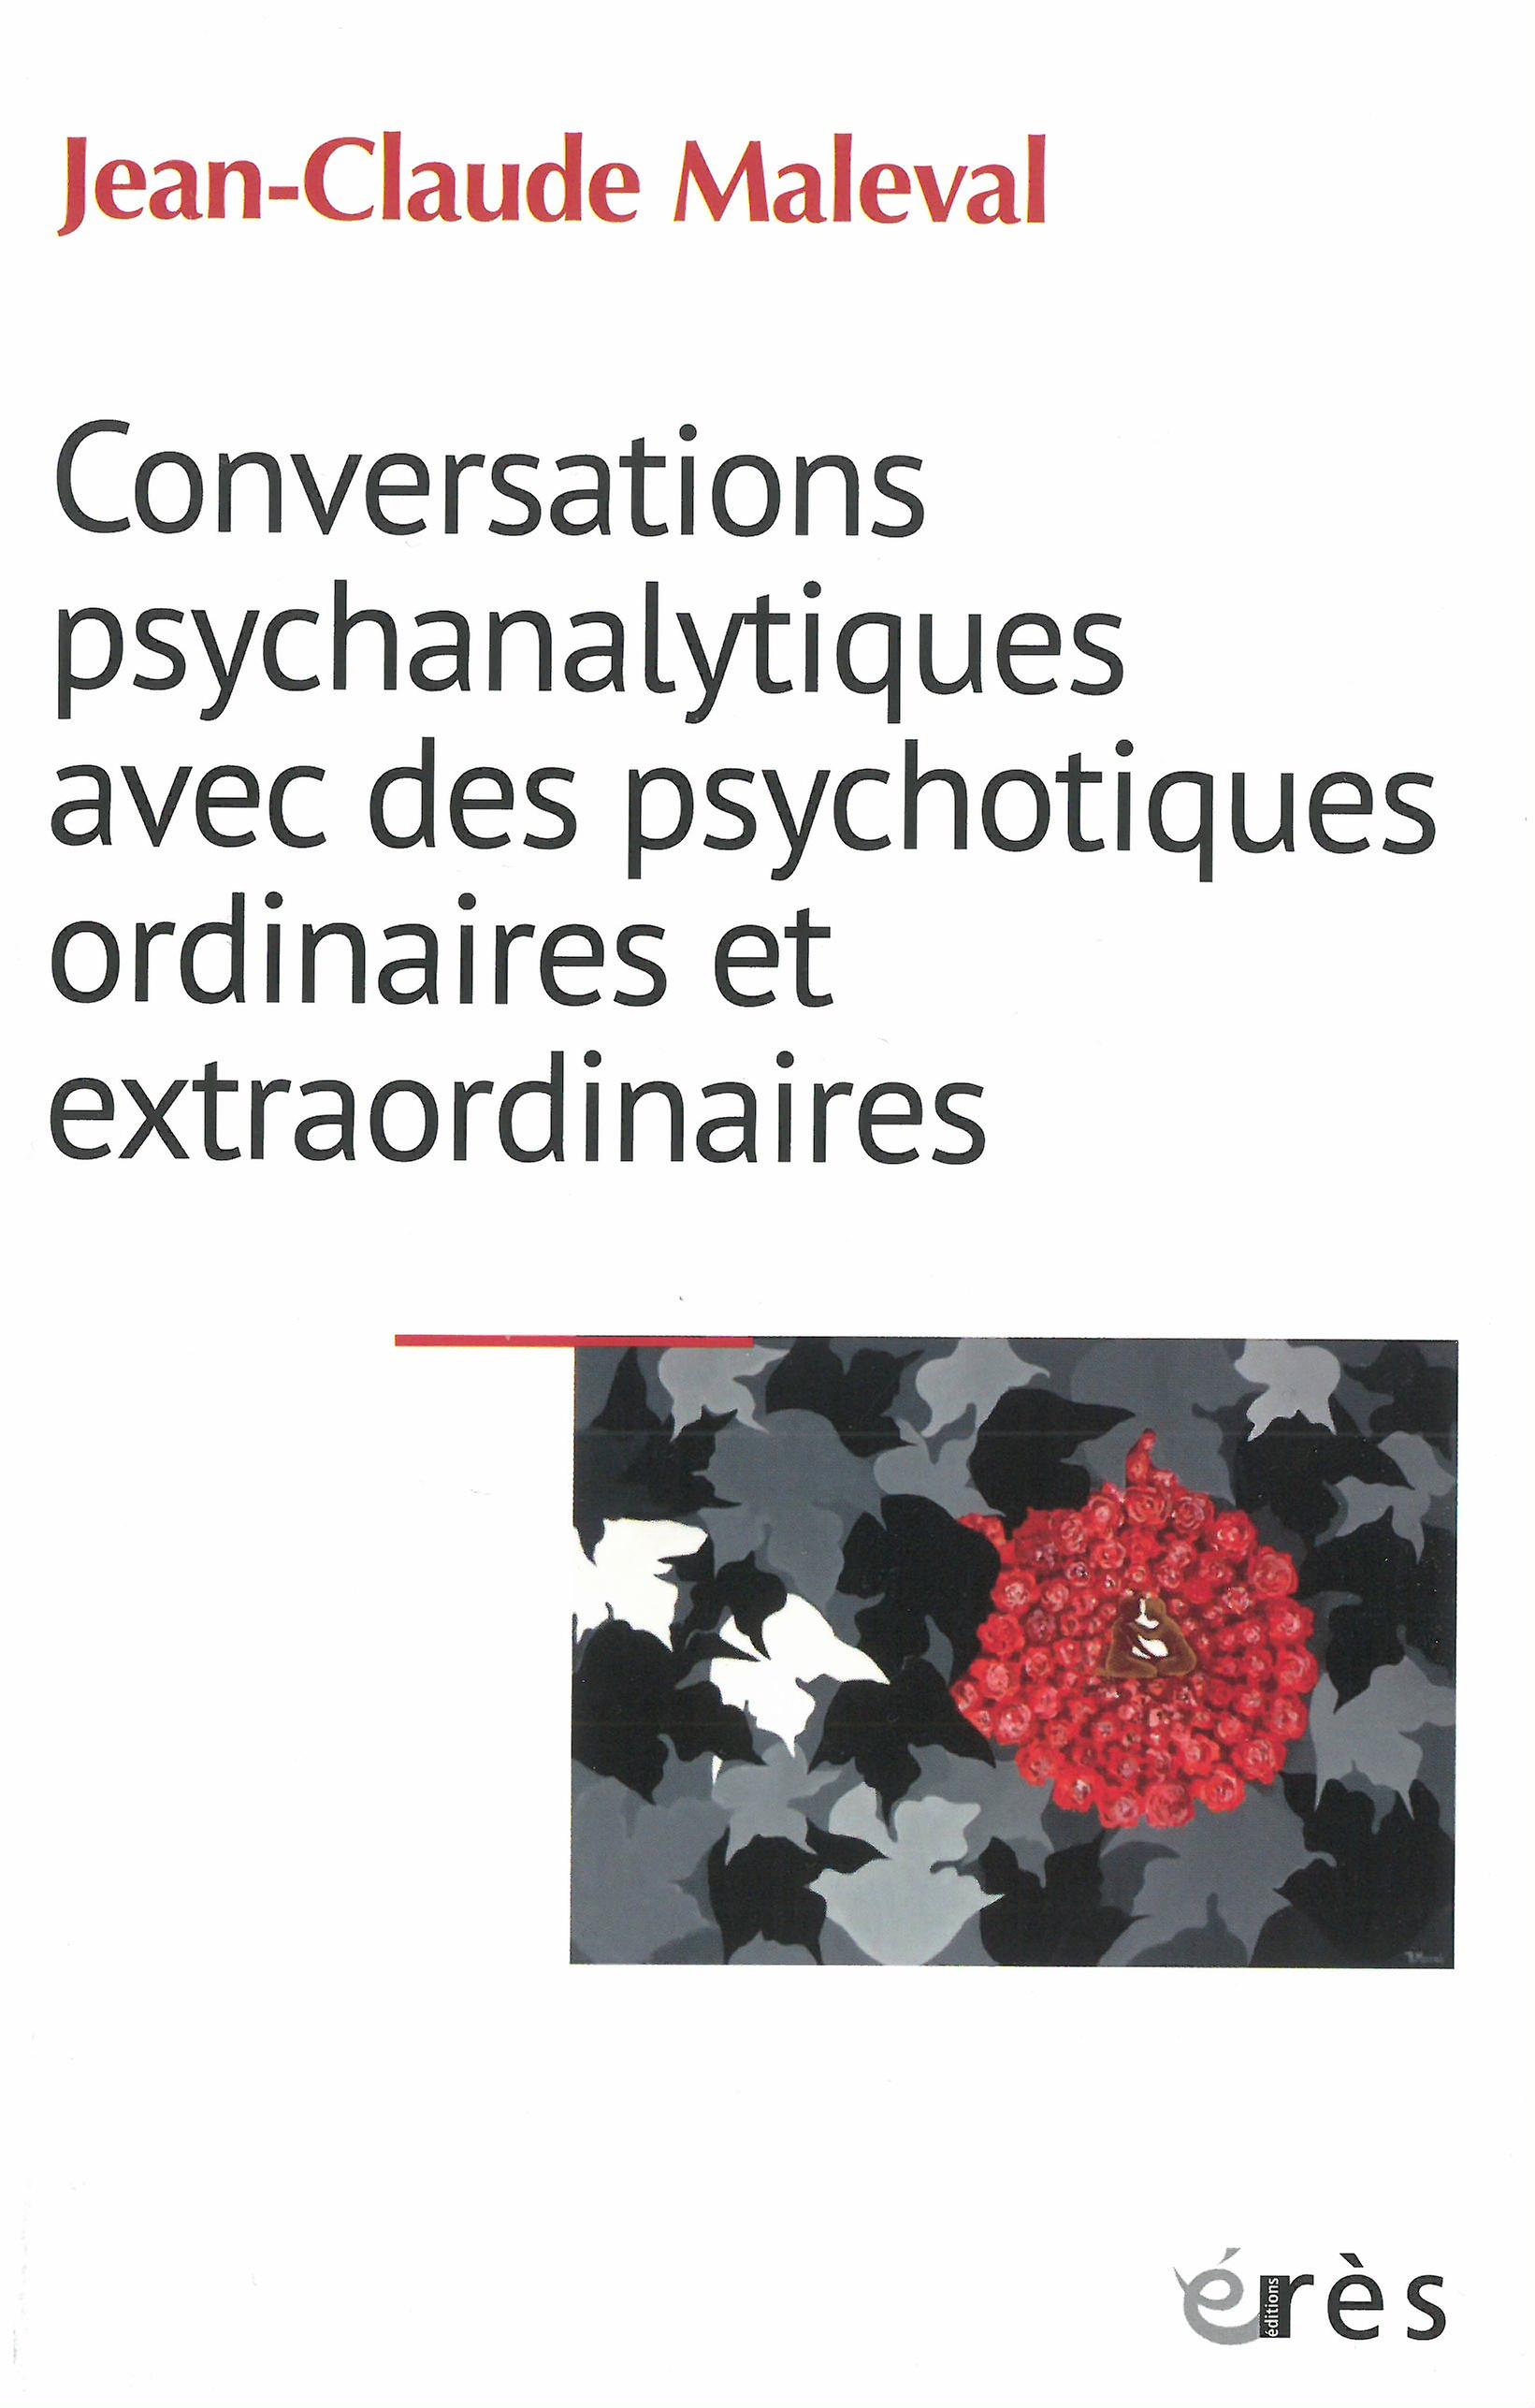 Jean Claude Maleval-Conversations psychanalytiques avec des psychotiques ordinaires et extraordinaires.jpg